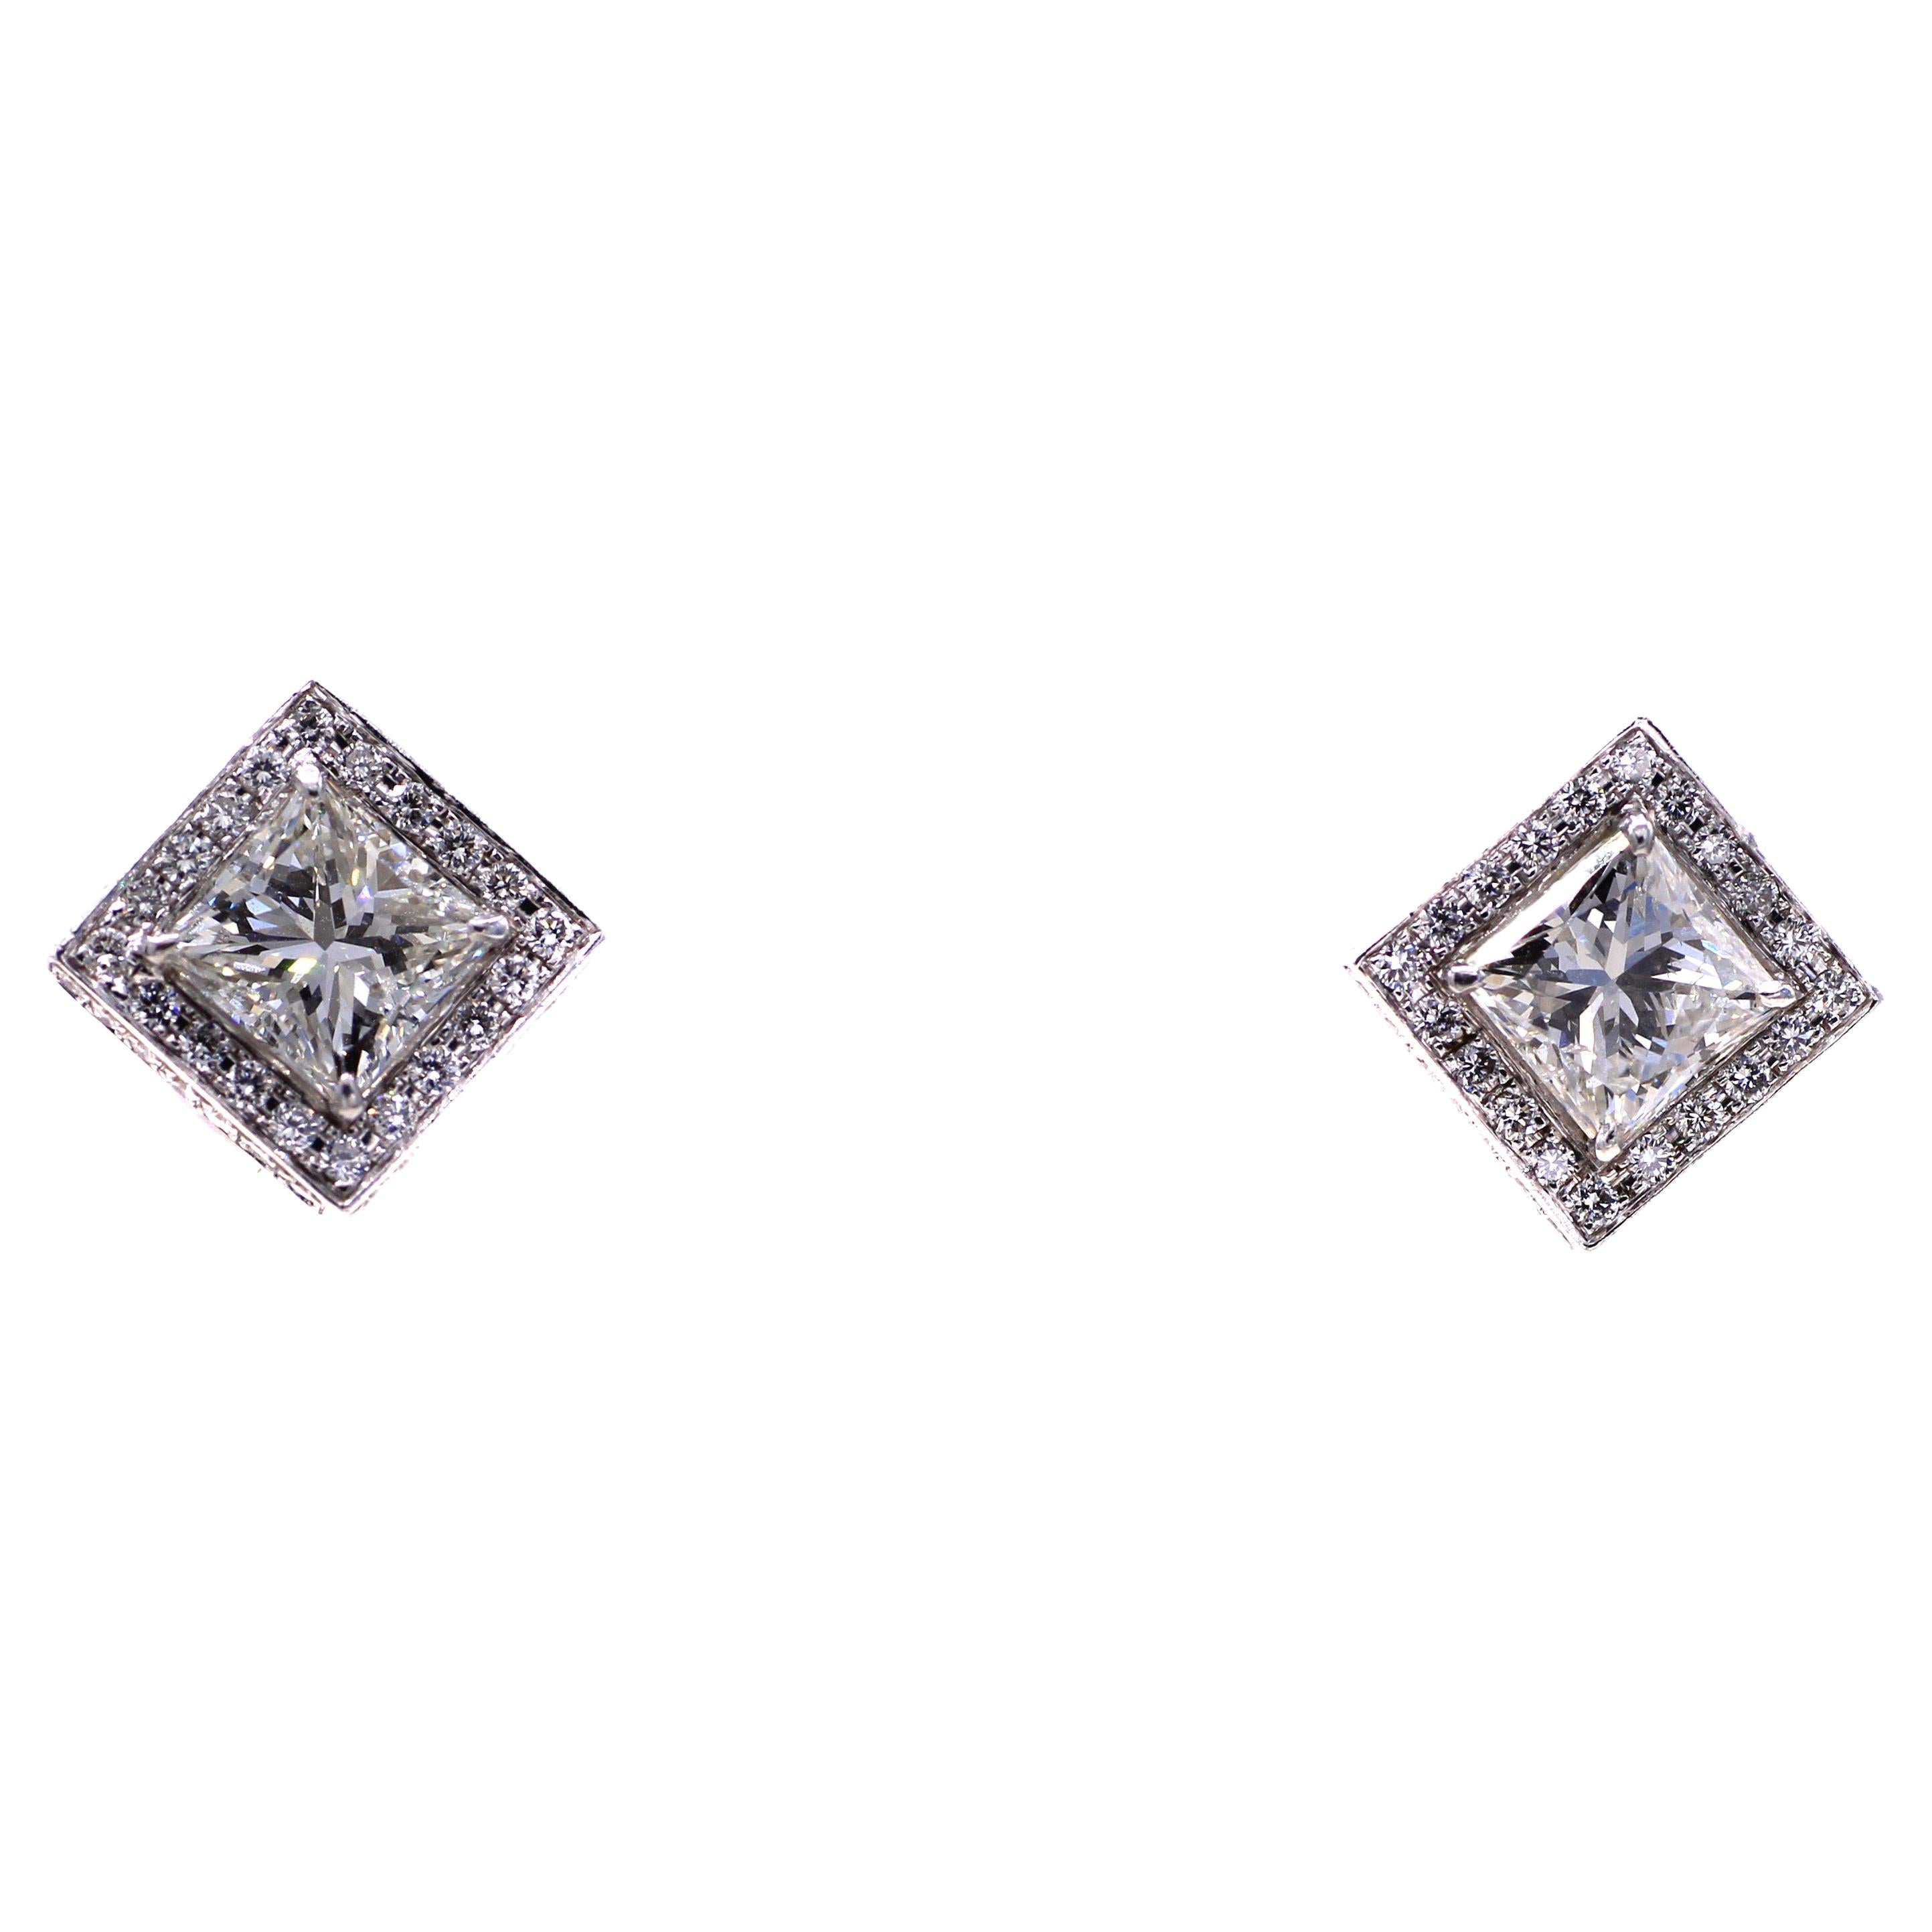 deux diamants de taille princesse parfaitement assortis sont sertis dans un halo en platine parfaitement réalisé à la main et serti de magnifiques diamants ronds de taille brillante blancs et vifs. Le halo n'est pas seulement agrémenté de diamants